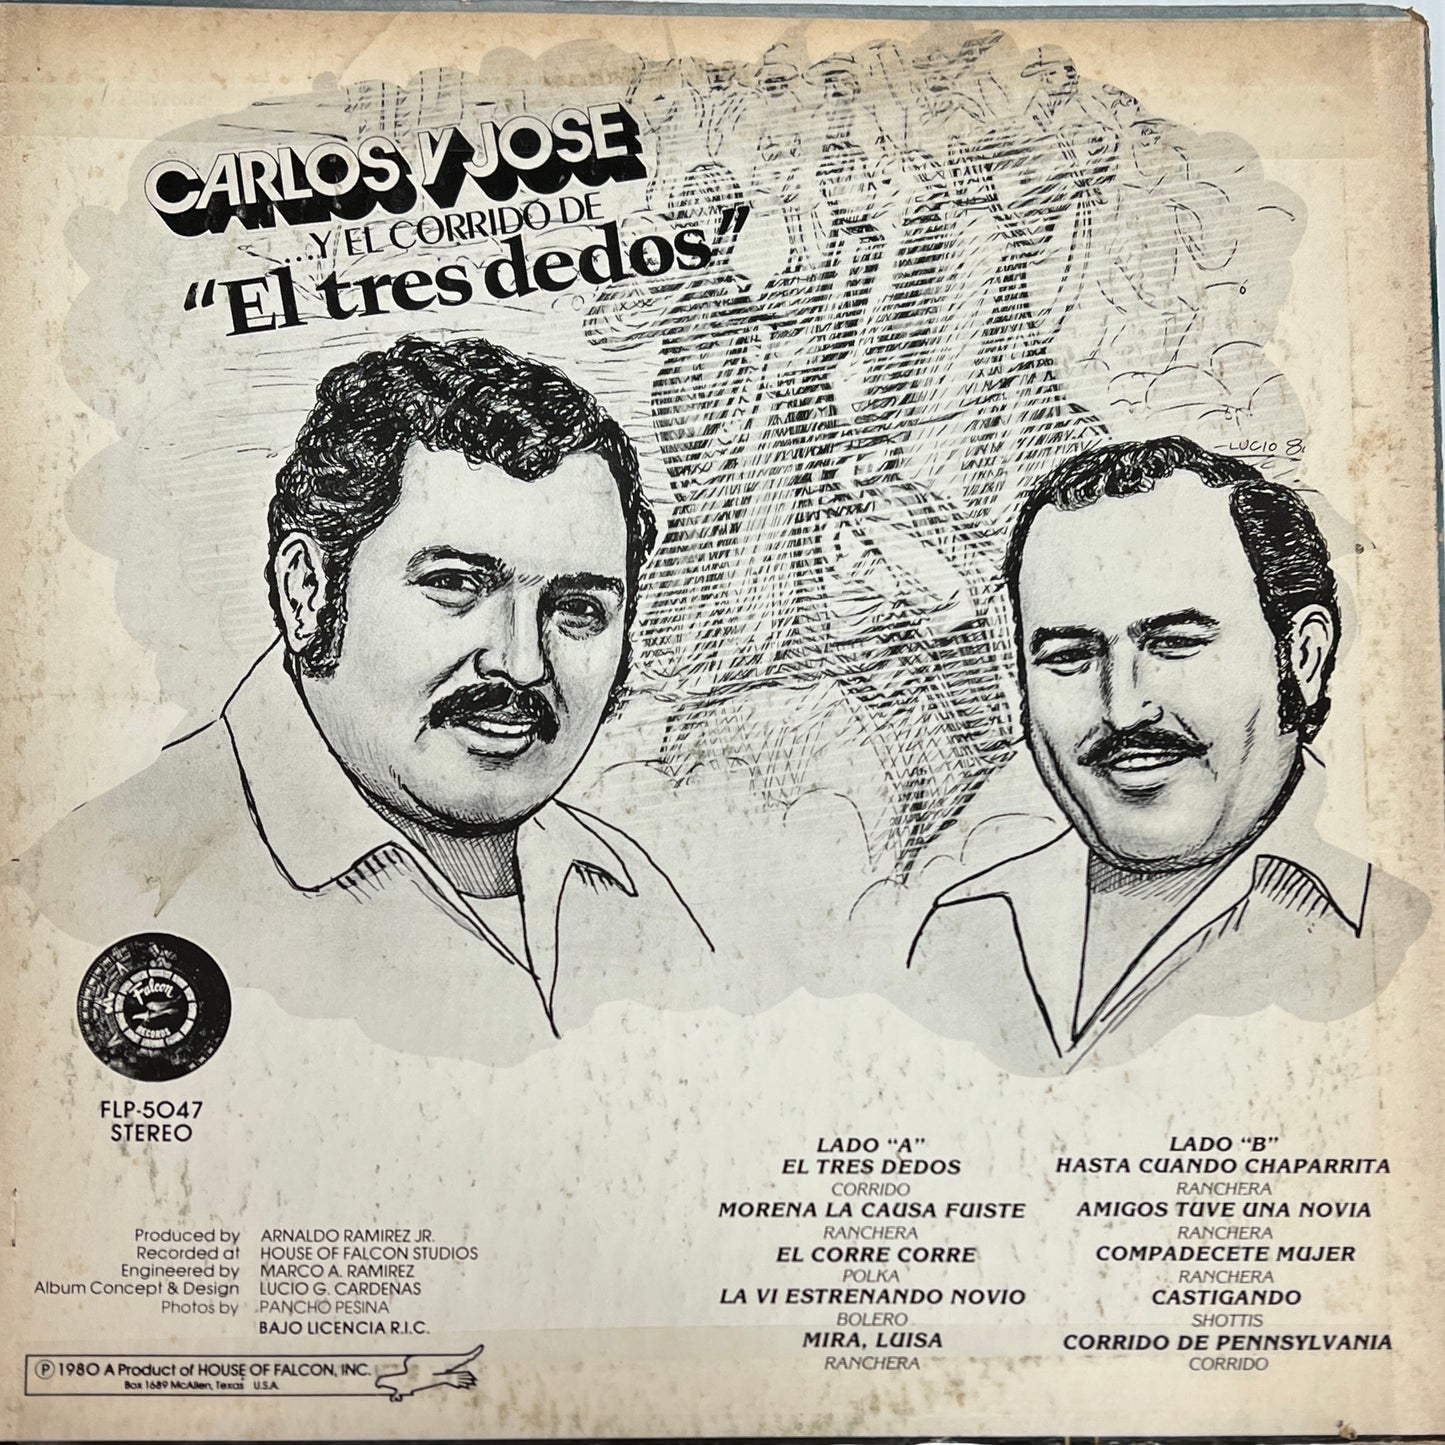 Carlos Y Jose - El Tres  Dedos (Open Vinyl)